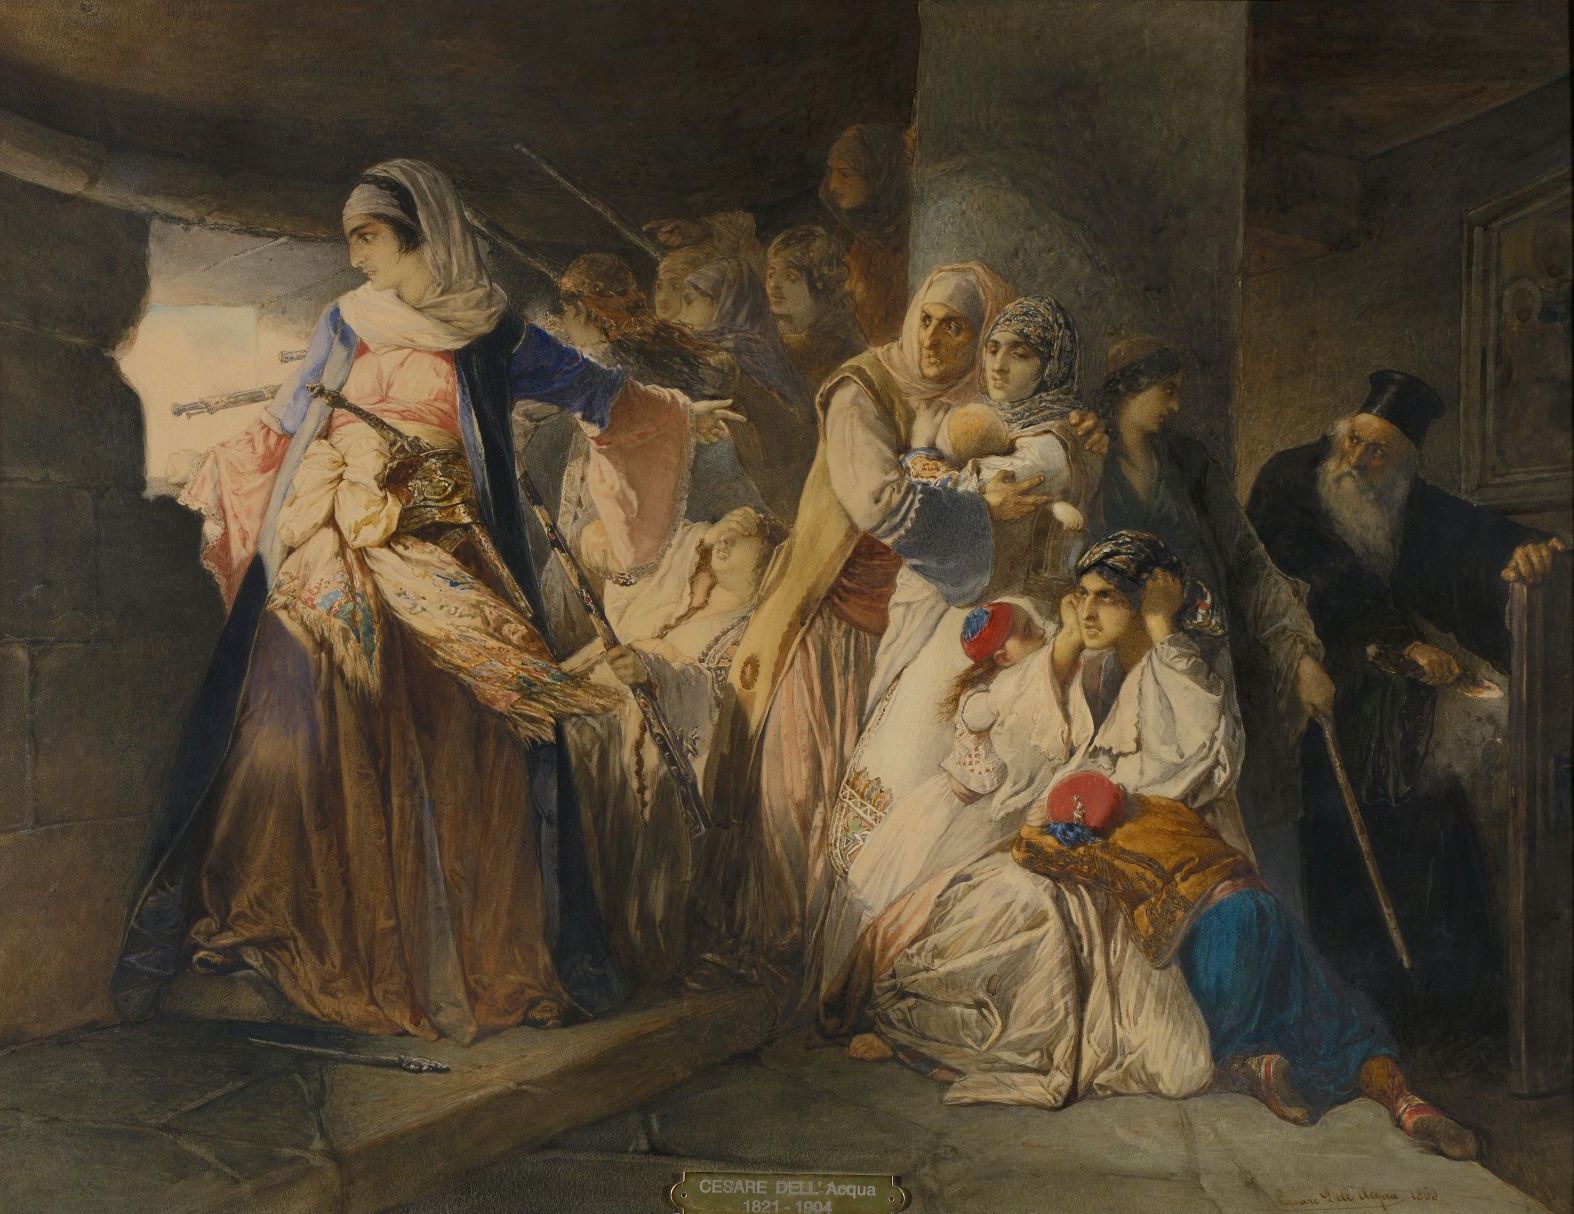 Θησαυροί της φιλελληνικής ζωγραφικής στο Μουσείο Μπενάκη - Μουσείο 